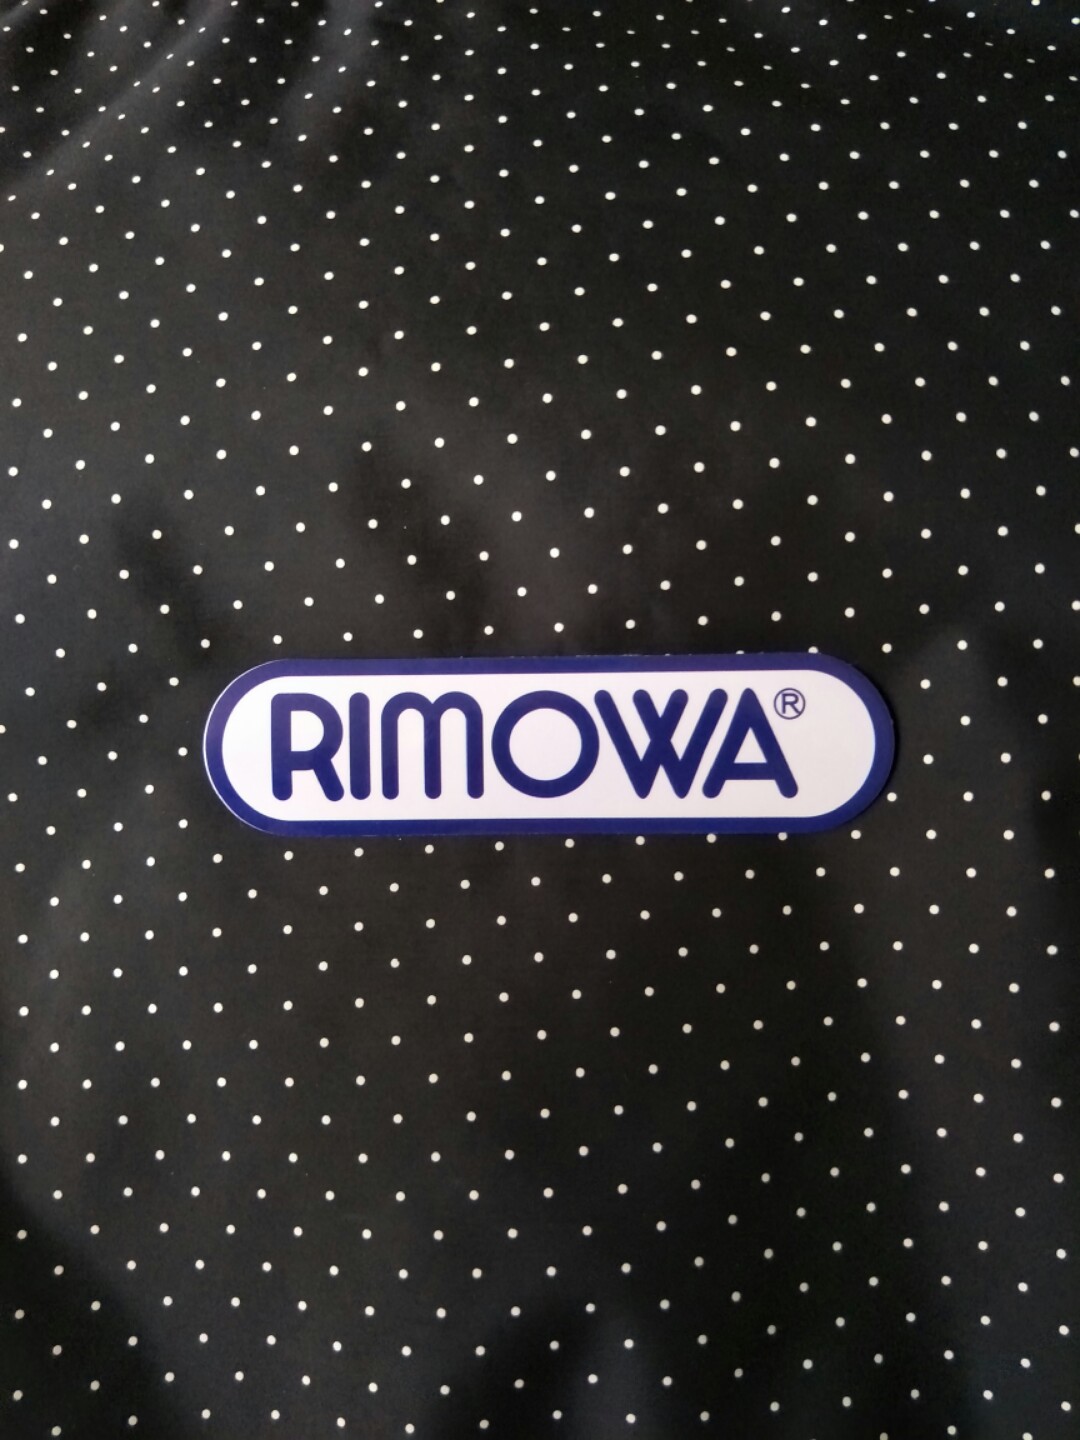 rimowa stickers-setup